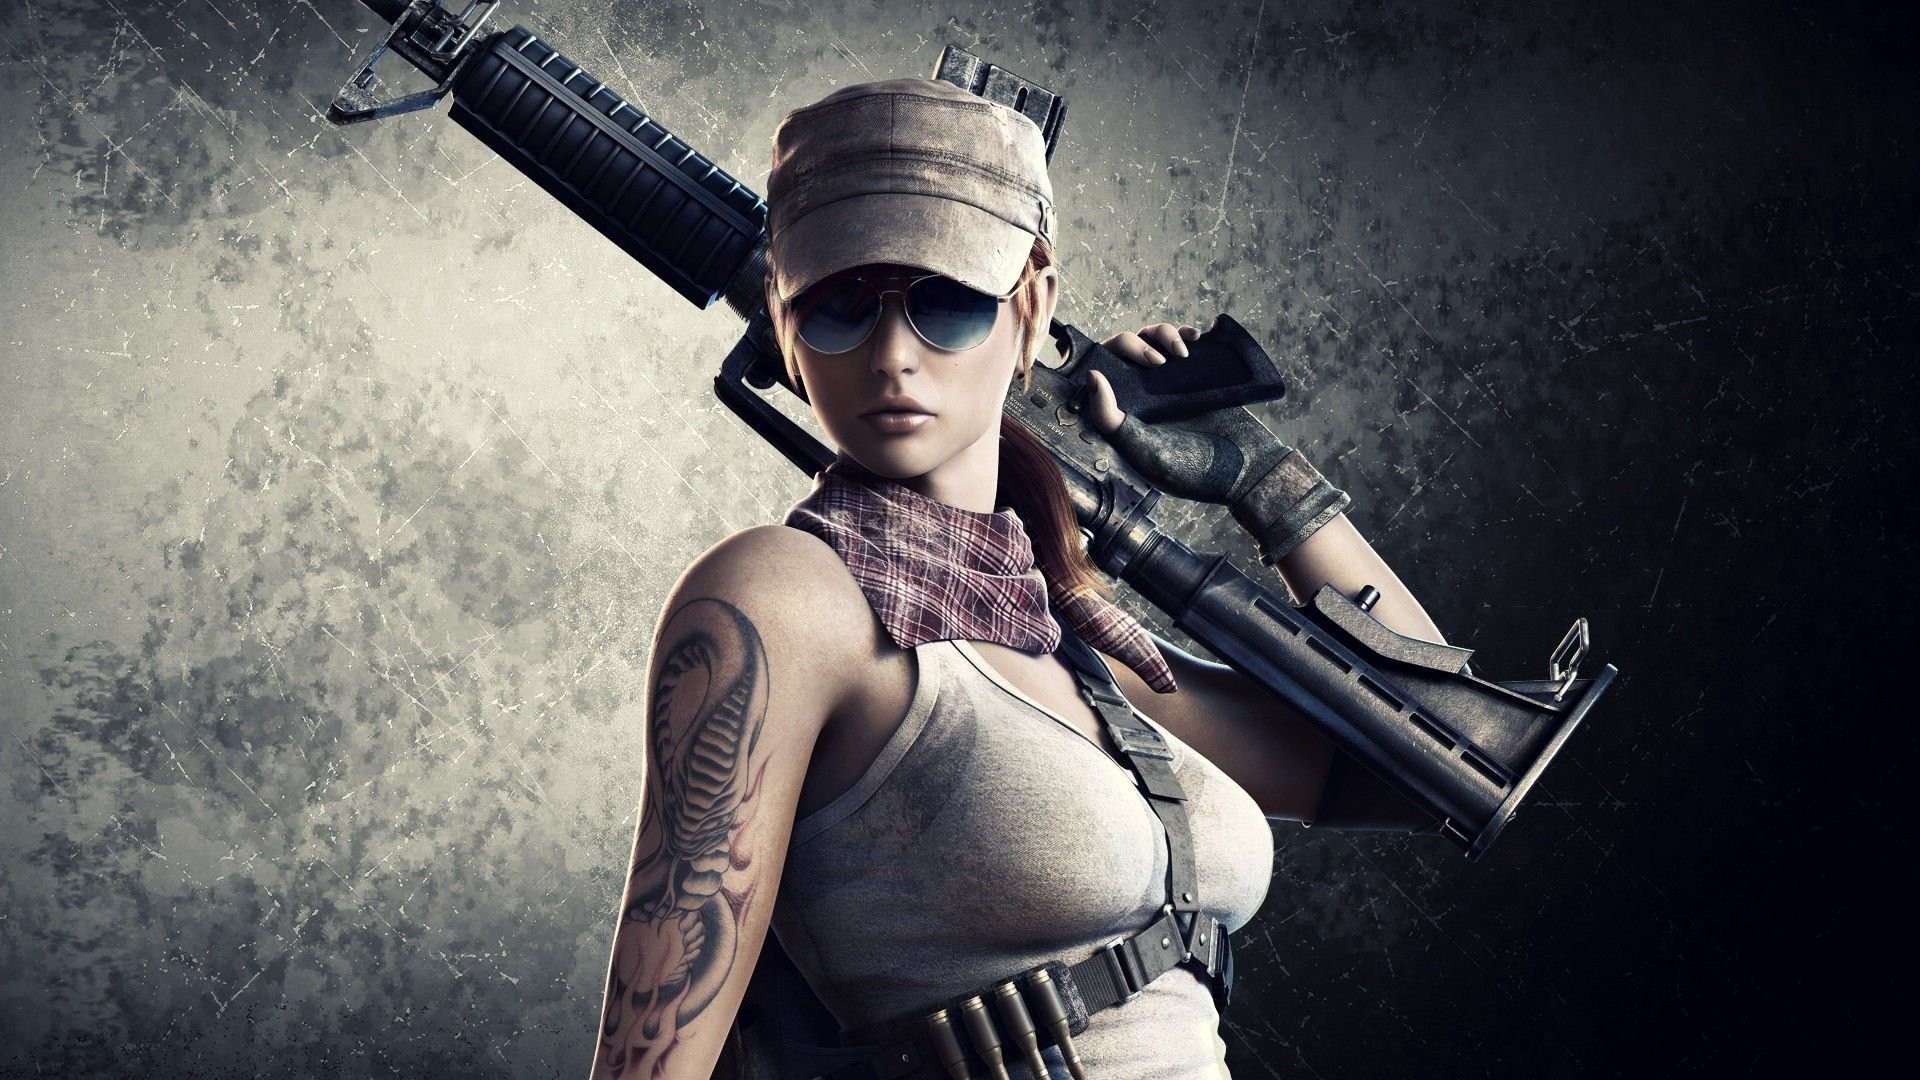 WOMEN AND GUNS – 3D game soldier tattoo girl wallpaper 555971 WallpaperUP